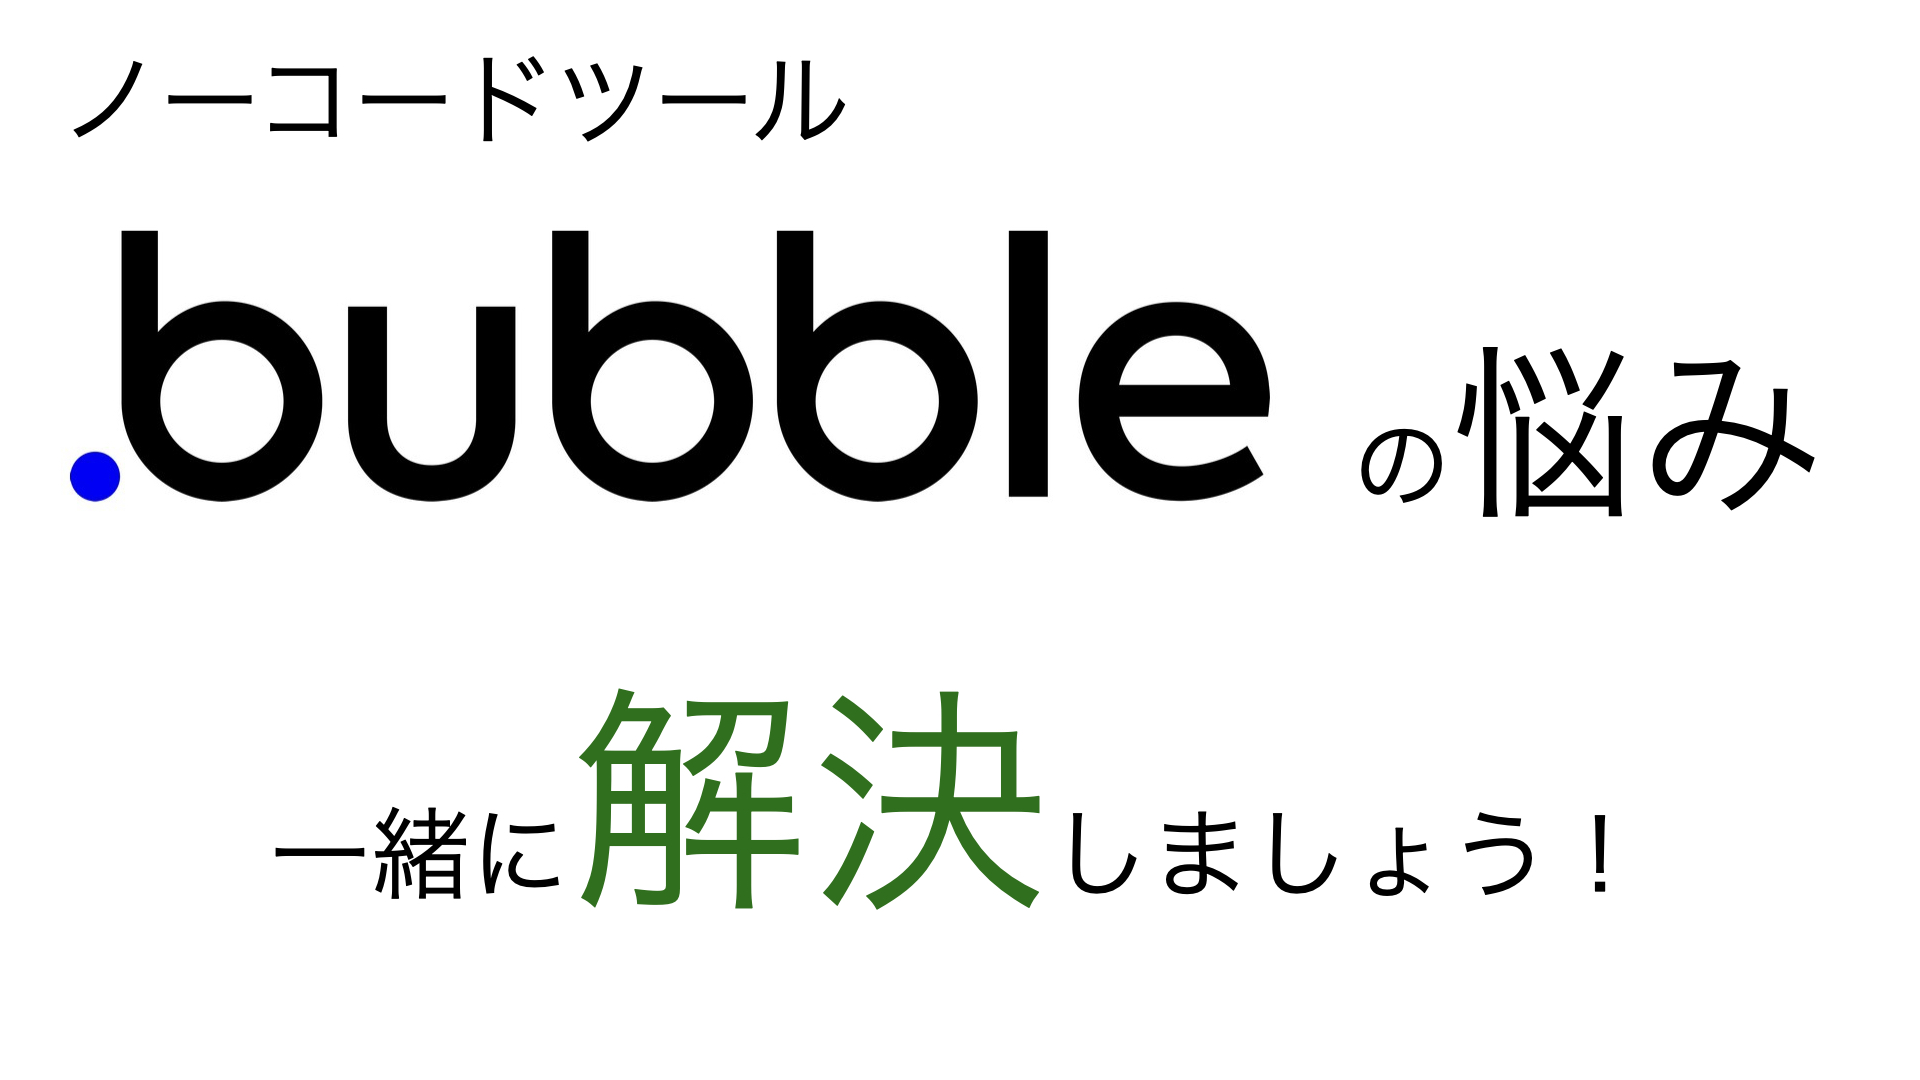 ノーコードツール「Bubble」の悩み、一緒に解決しましょう